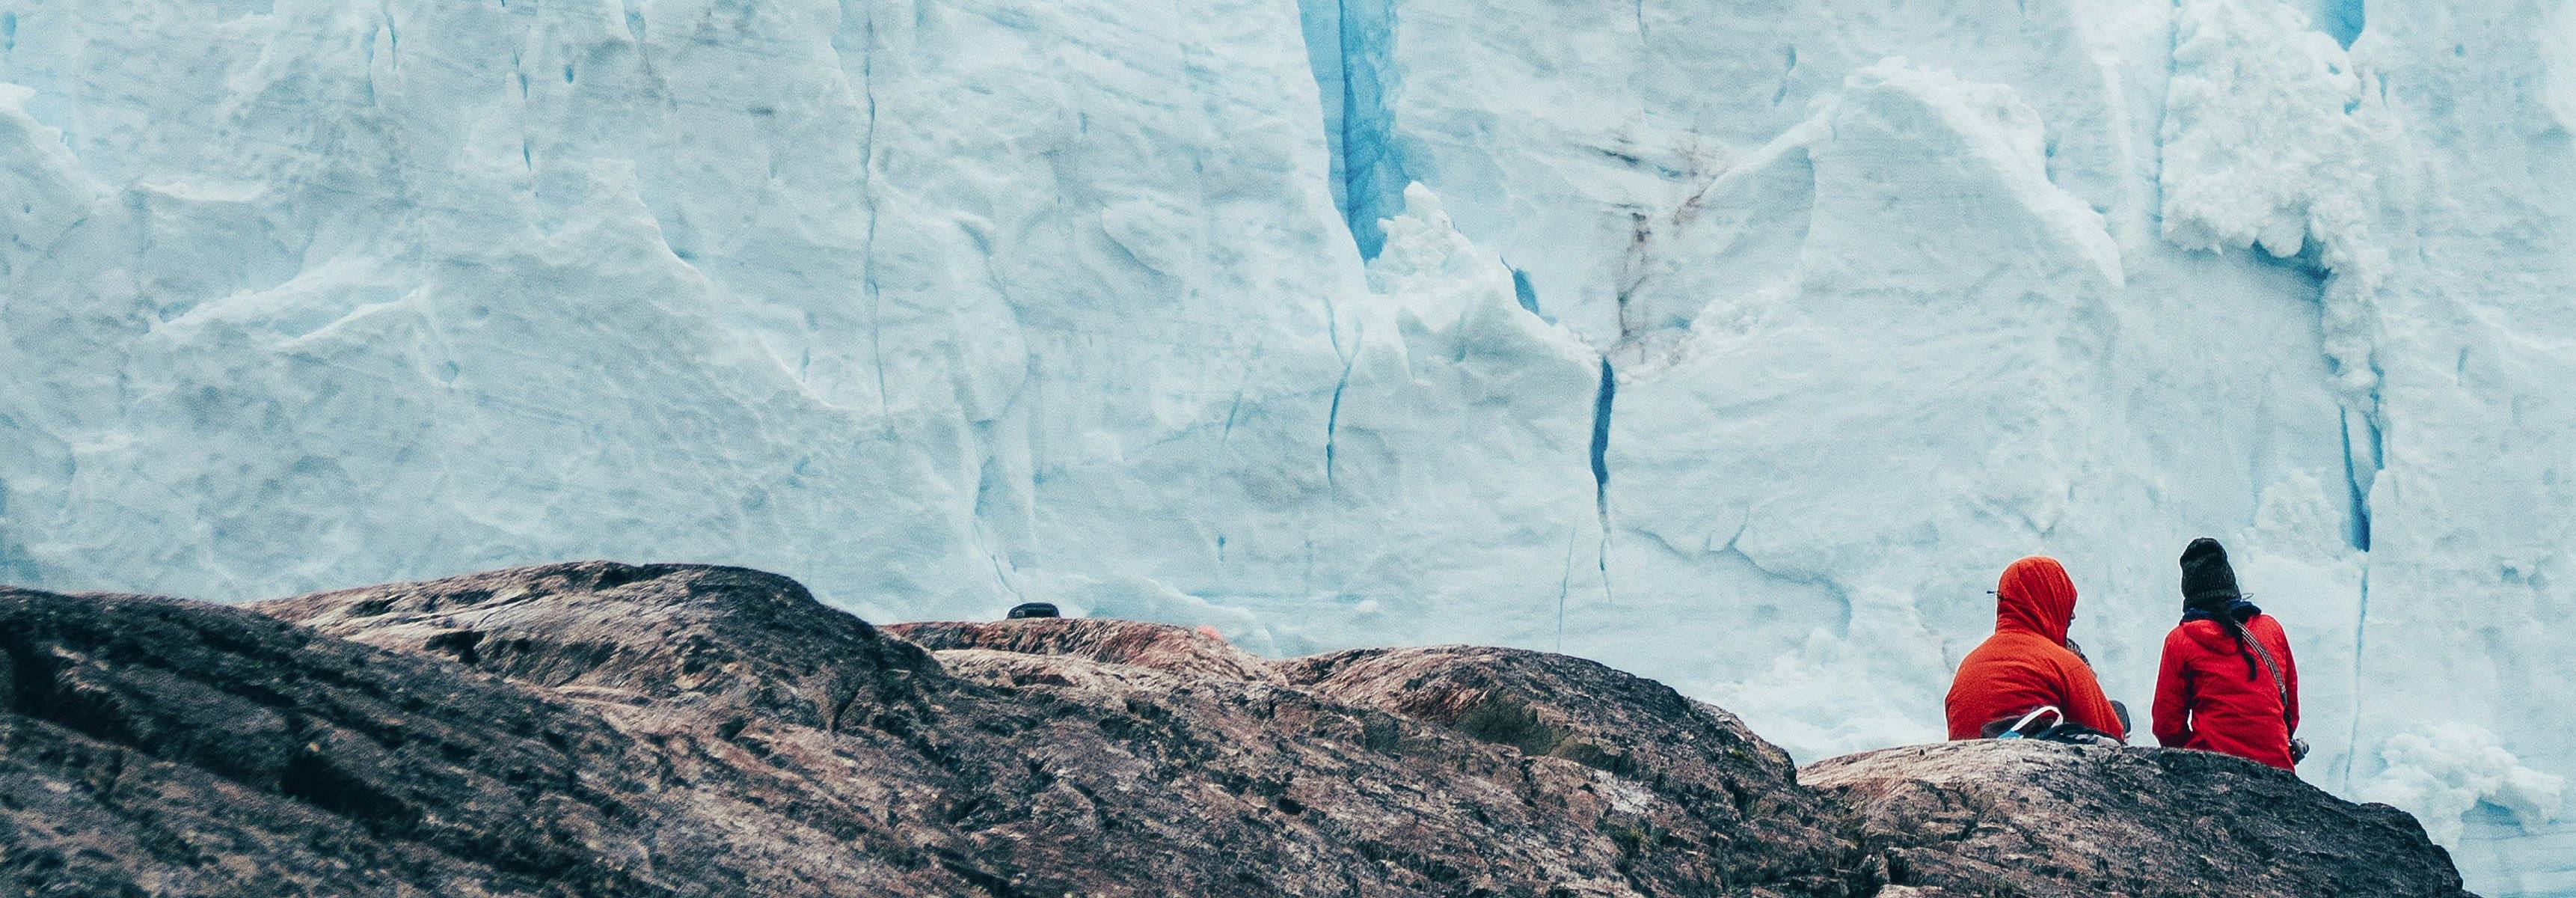 Zwei Leute sitzen und bewundern den majestätischen Perito Moreno